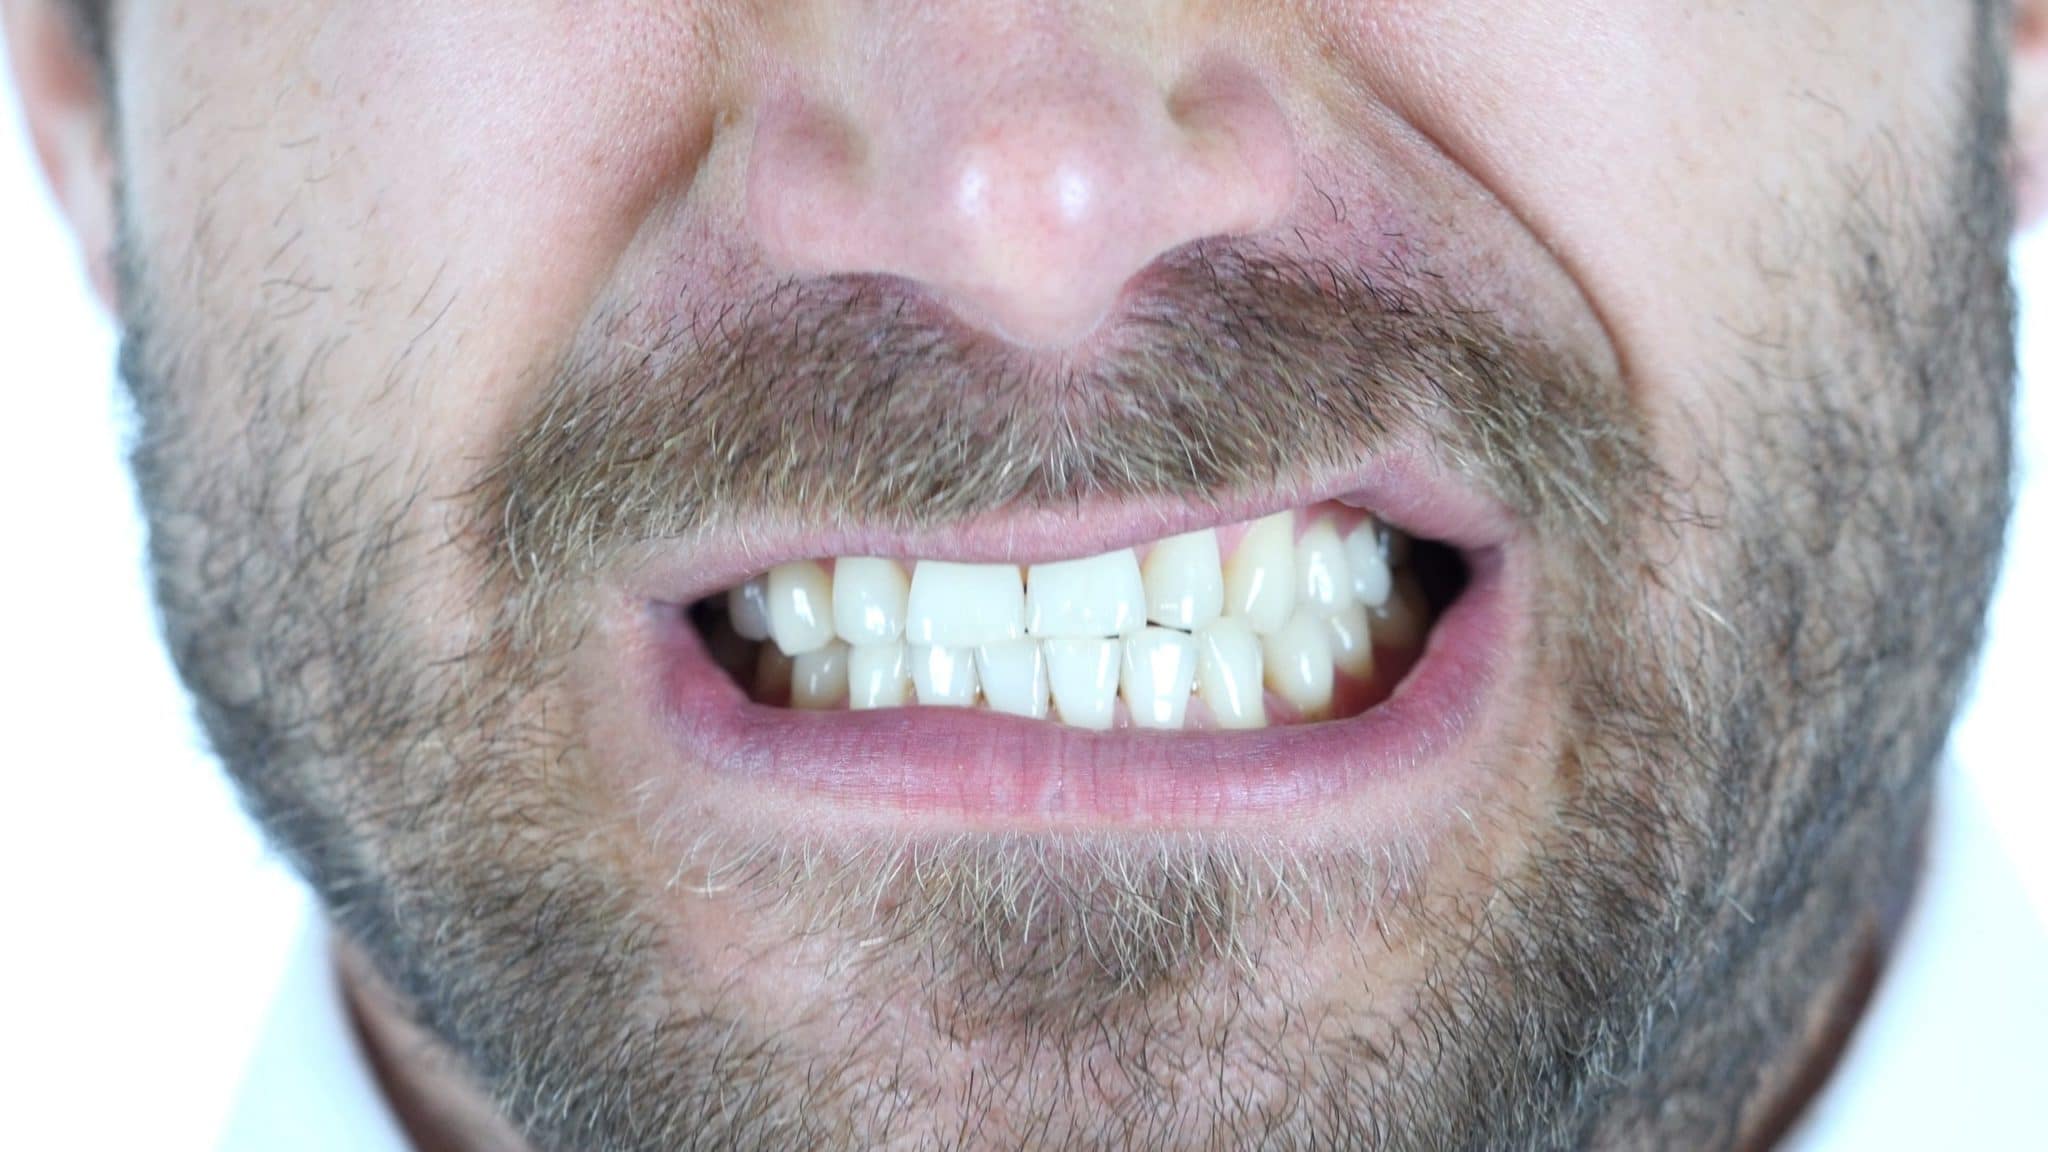 бруксизм, как остановить скрежетание зубами, и орофациальная боль показаны изображения